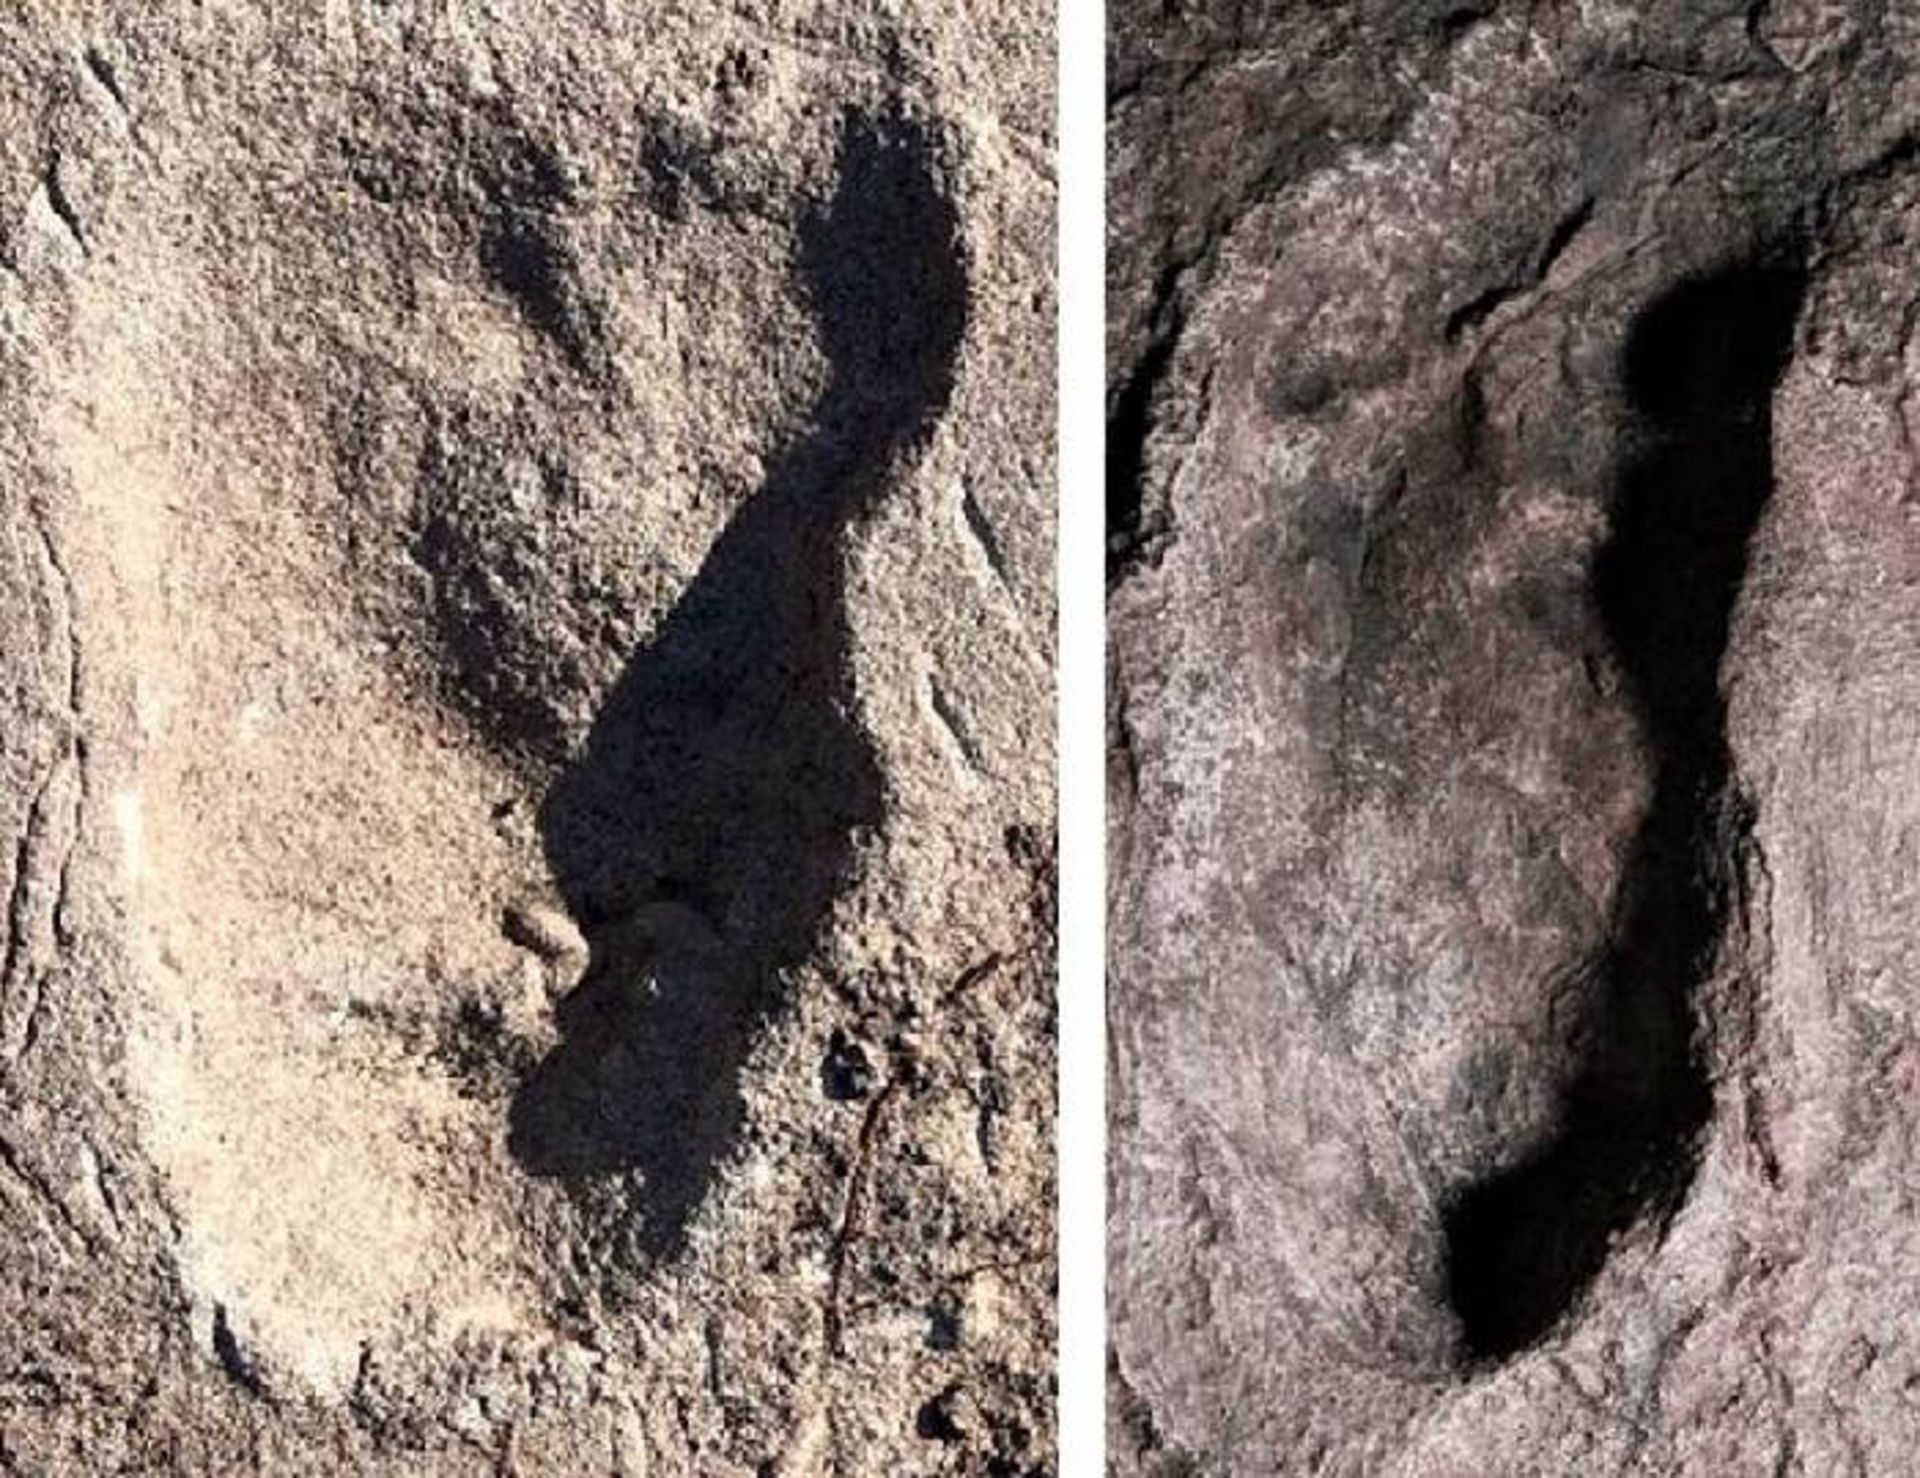 ردپای کشف شده در لائتولی / footprints